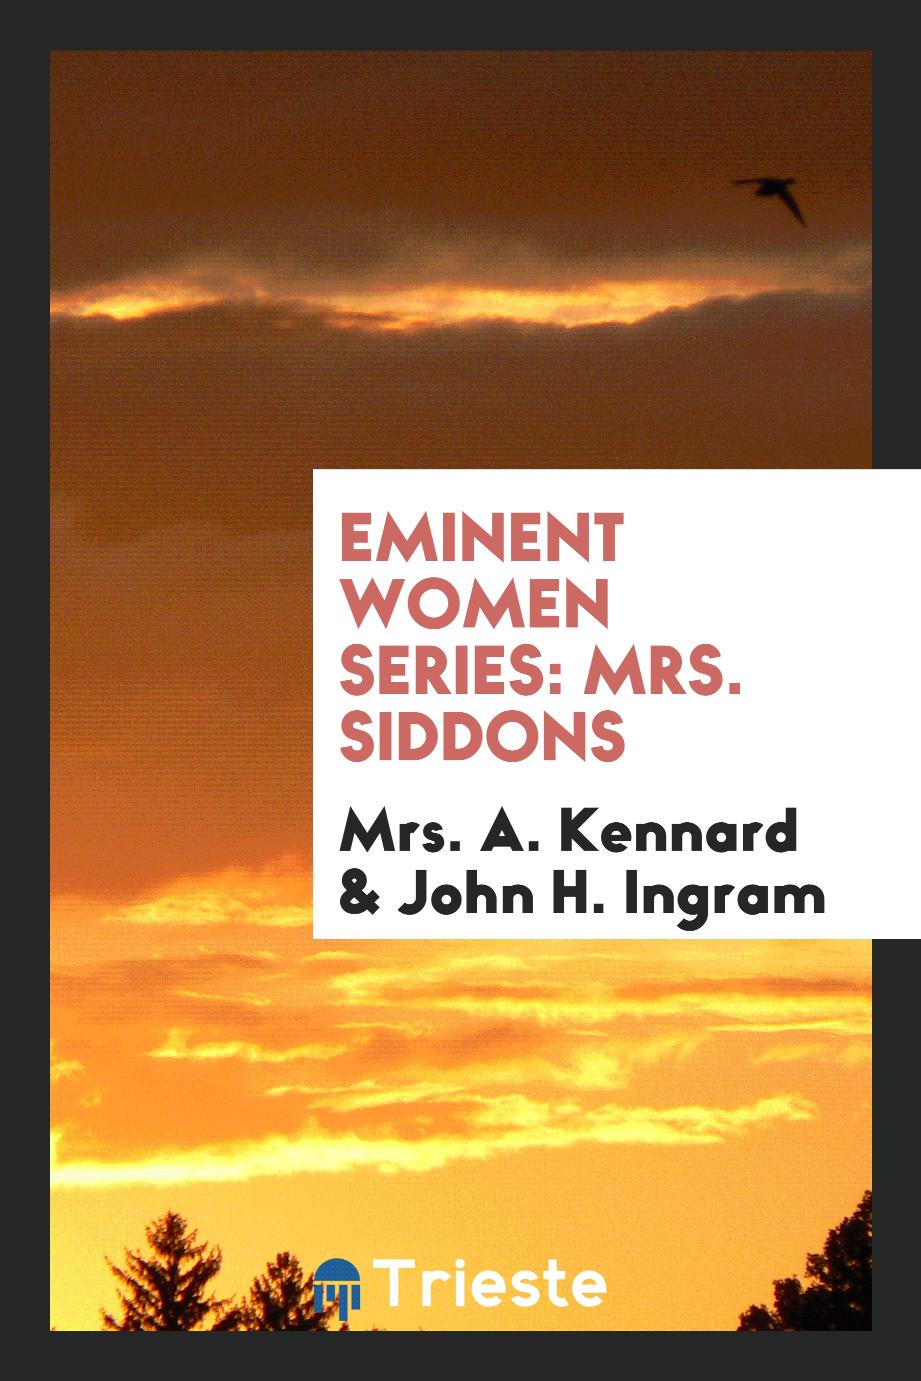 Eminent Women Series: Mrs. Siddons